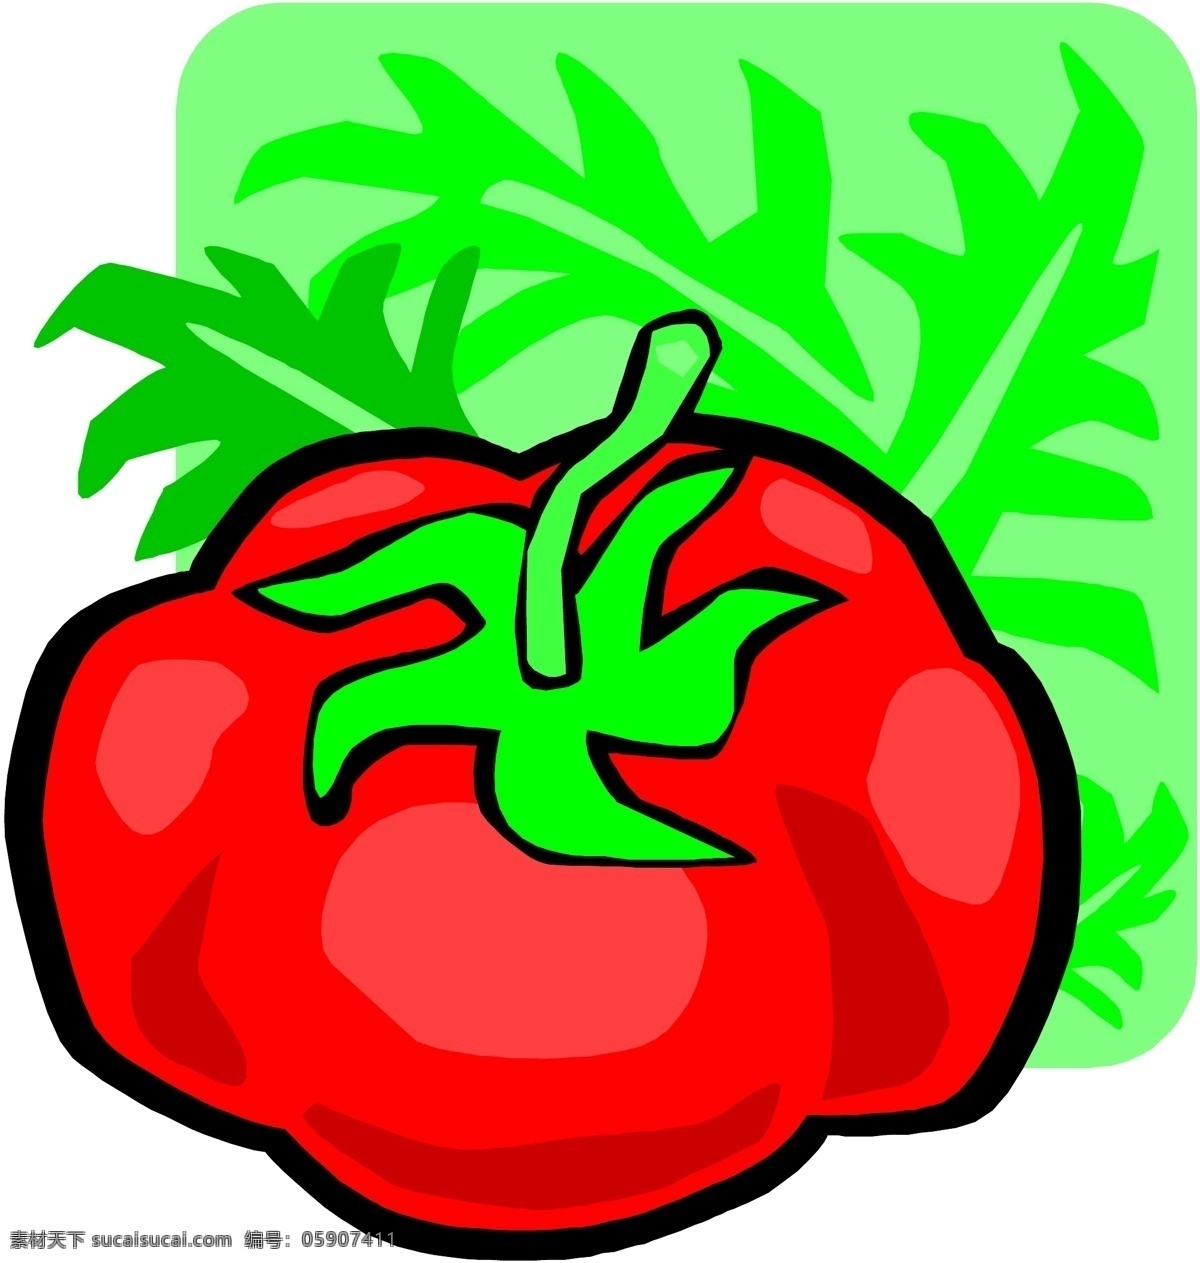 番茄 矢量 生物 世界 矢量素材 矢量图 蔬菜 蔬菜矢量图 西红柿 番茄矢量素材 其他矢量图